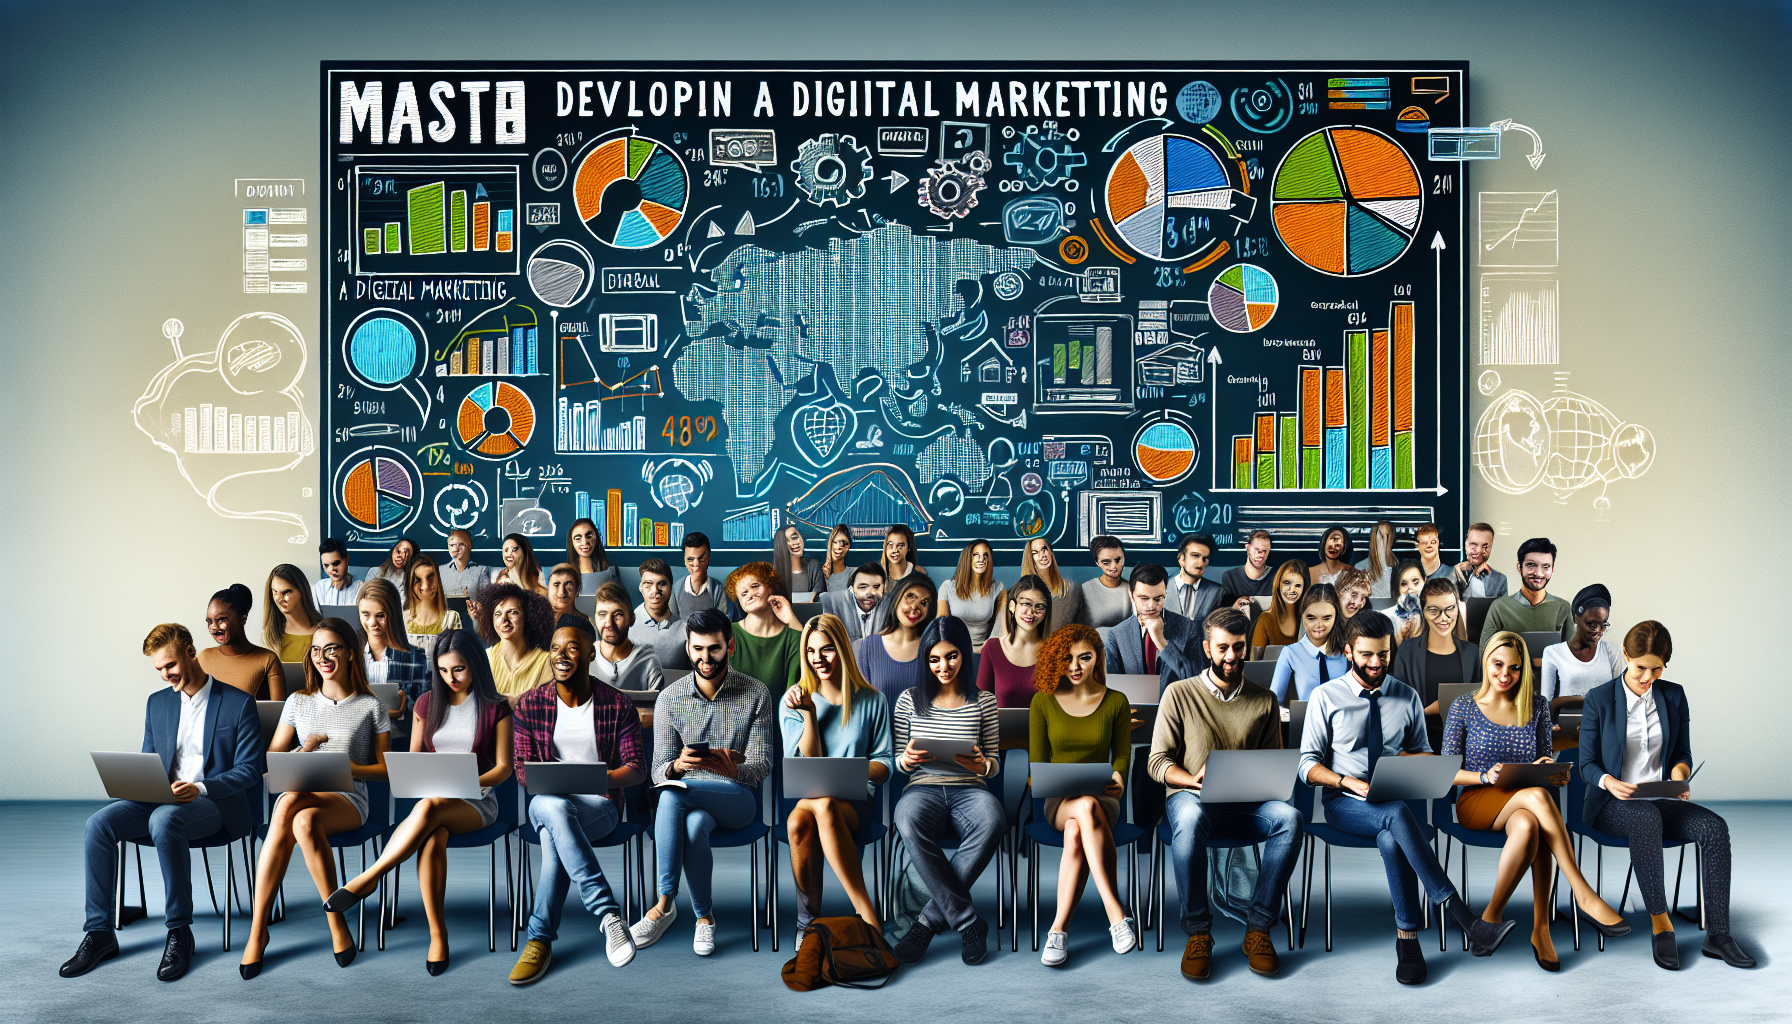 formation marketing digital : développez une stratégie efficace de marketing digital avec nos cours spécialisés.